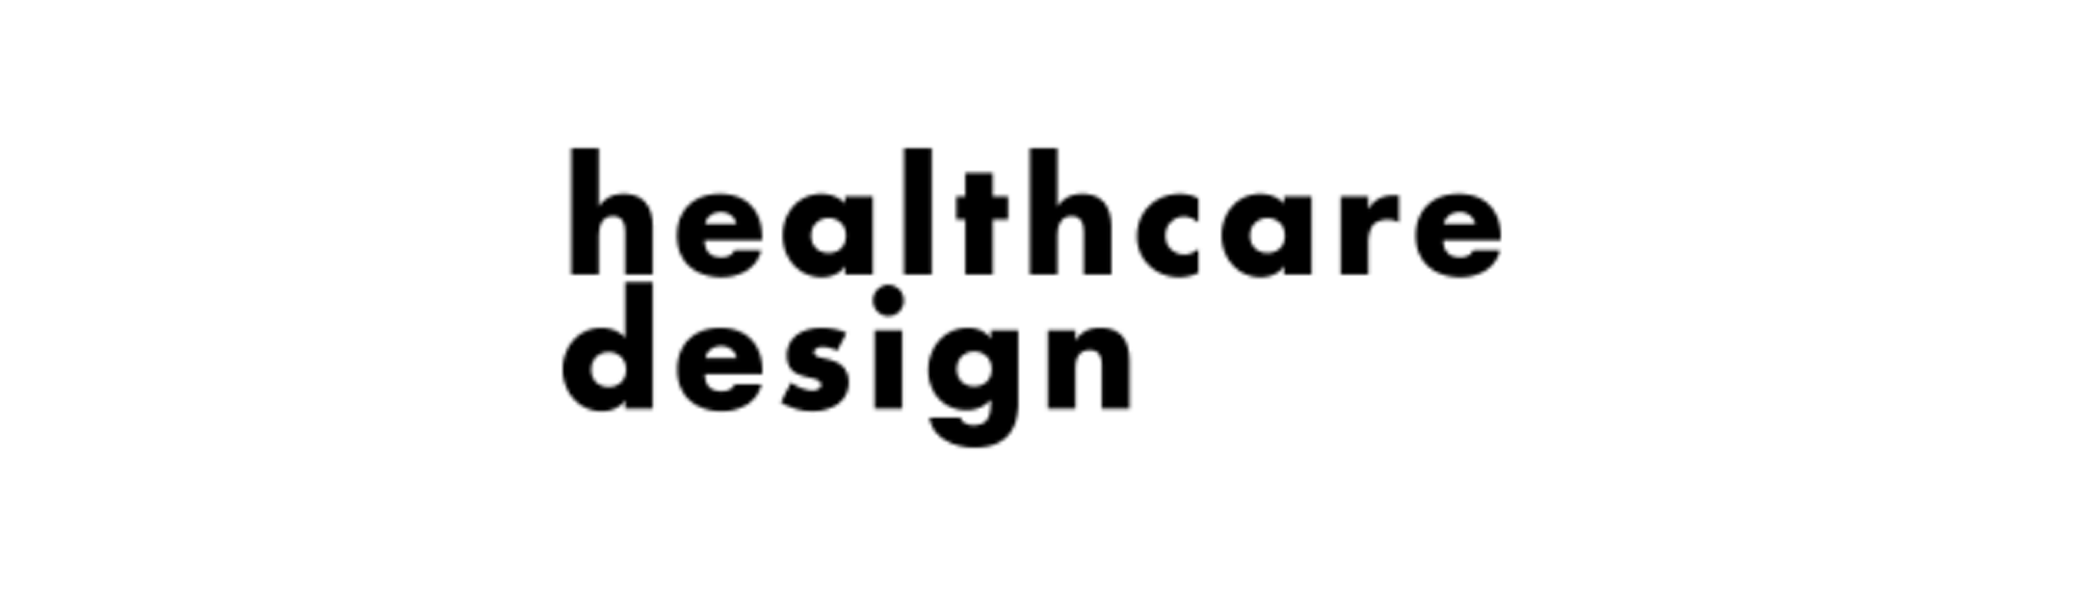 Healthcare Design Logo 2021.png